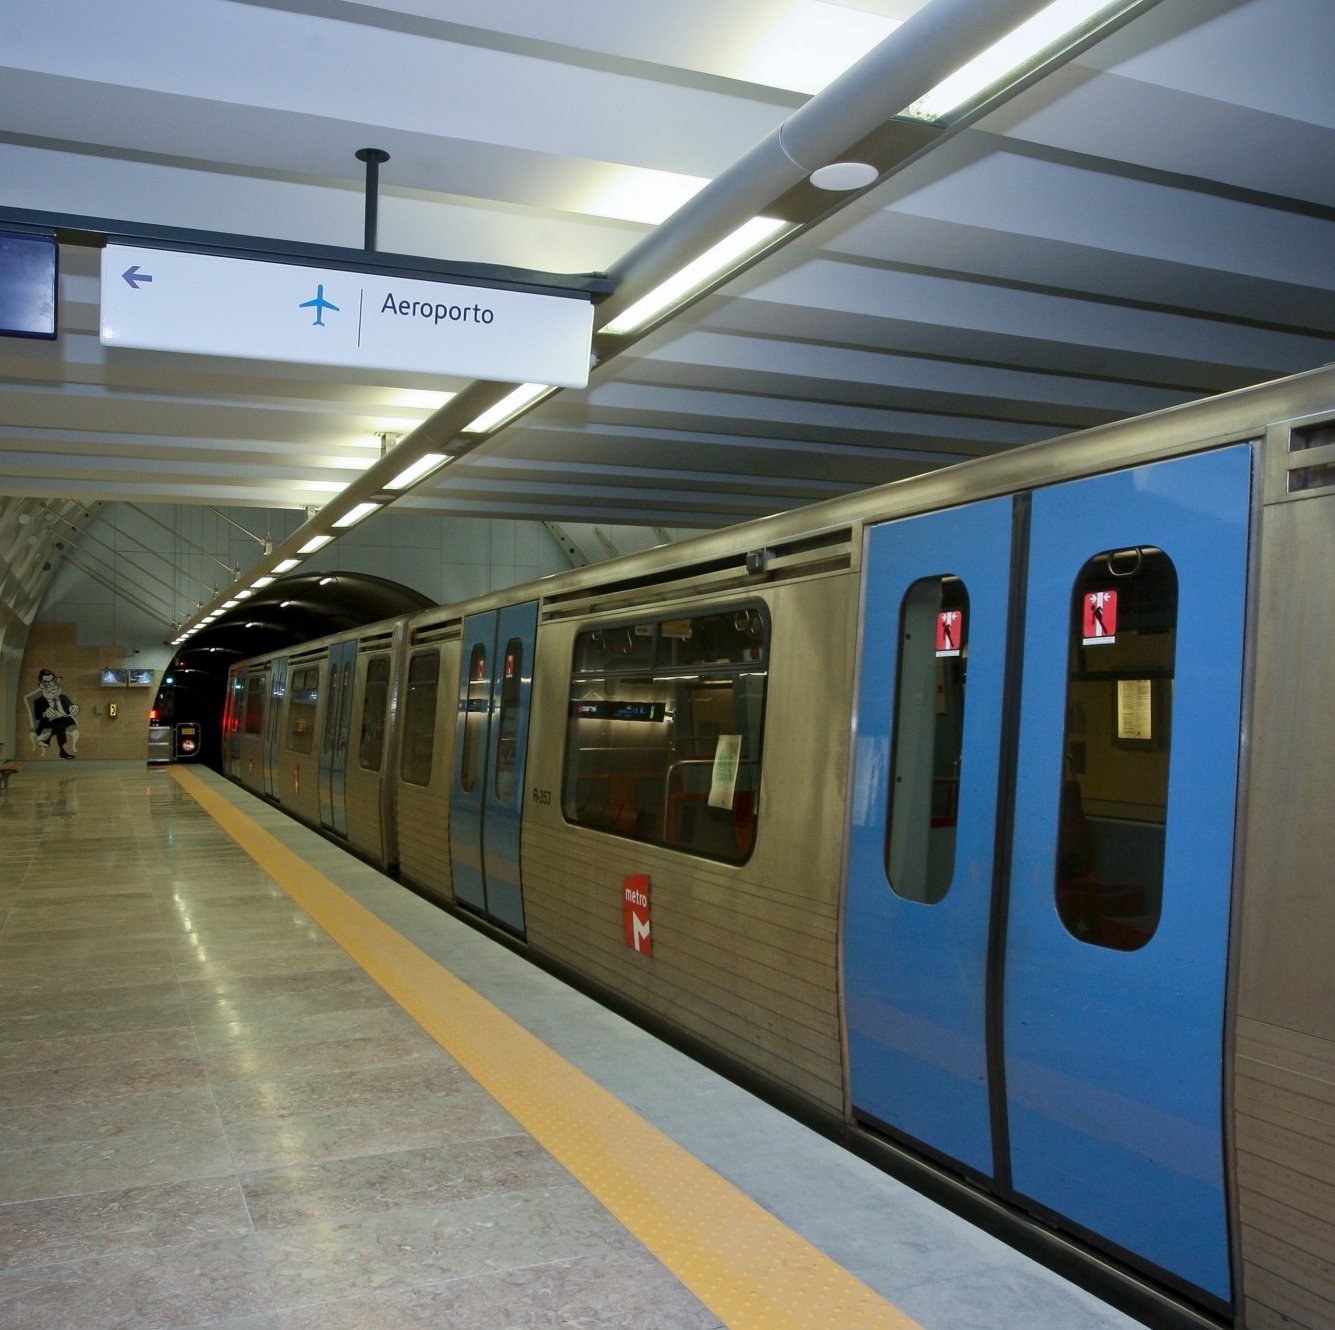 Metro de Lisboa adjudica extensão da Linha Vermelha a Alcântara por 321,9 milhões de euros